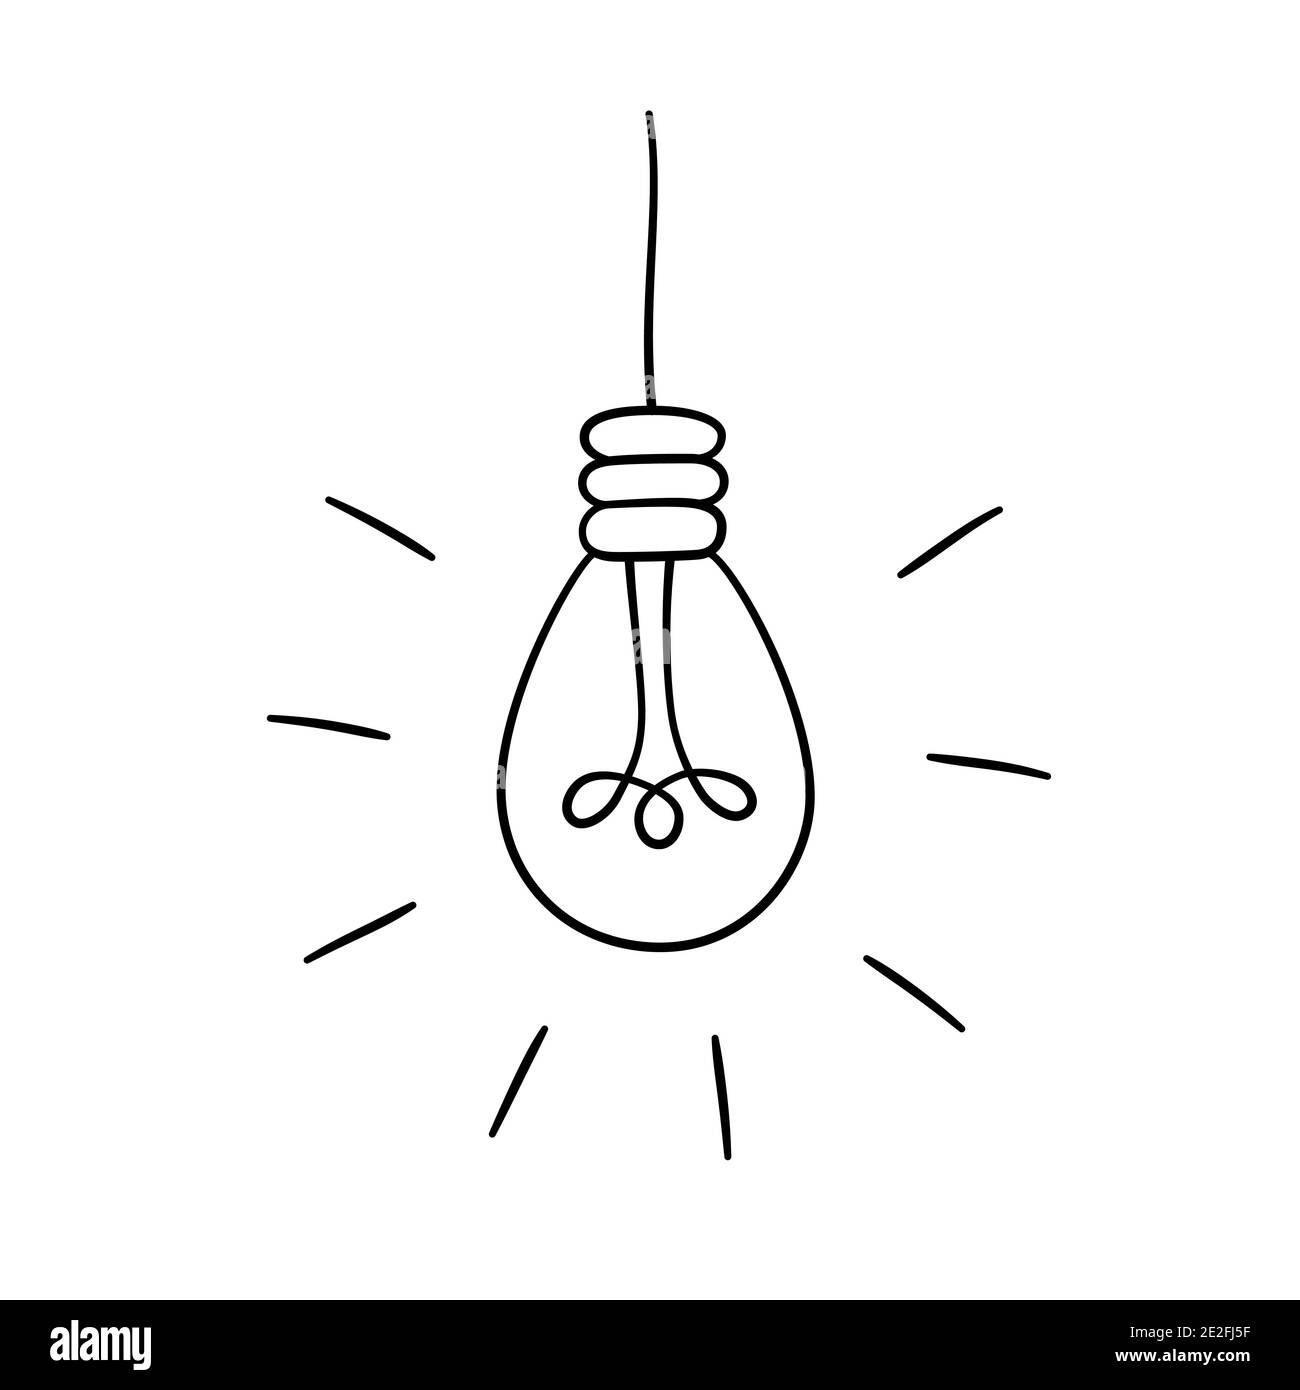 Handgezeichneter Vektor-Satz von Glühlampen. Kollektion von Loft-Lampen im Doodle-Stil. Stock Vektor